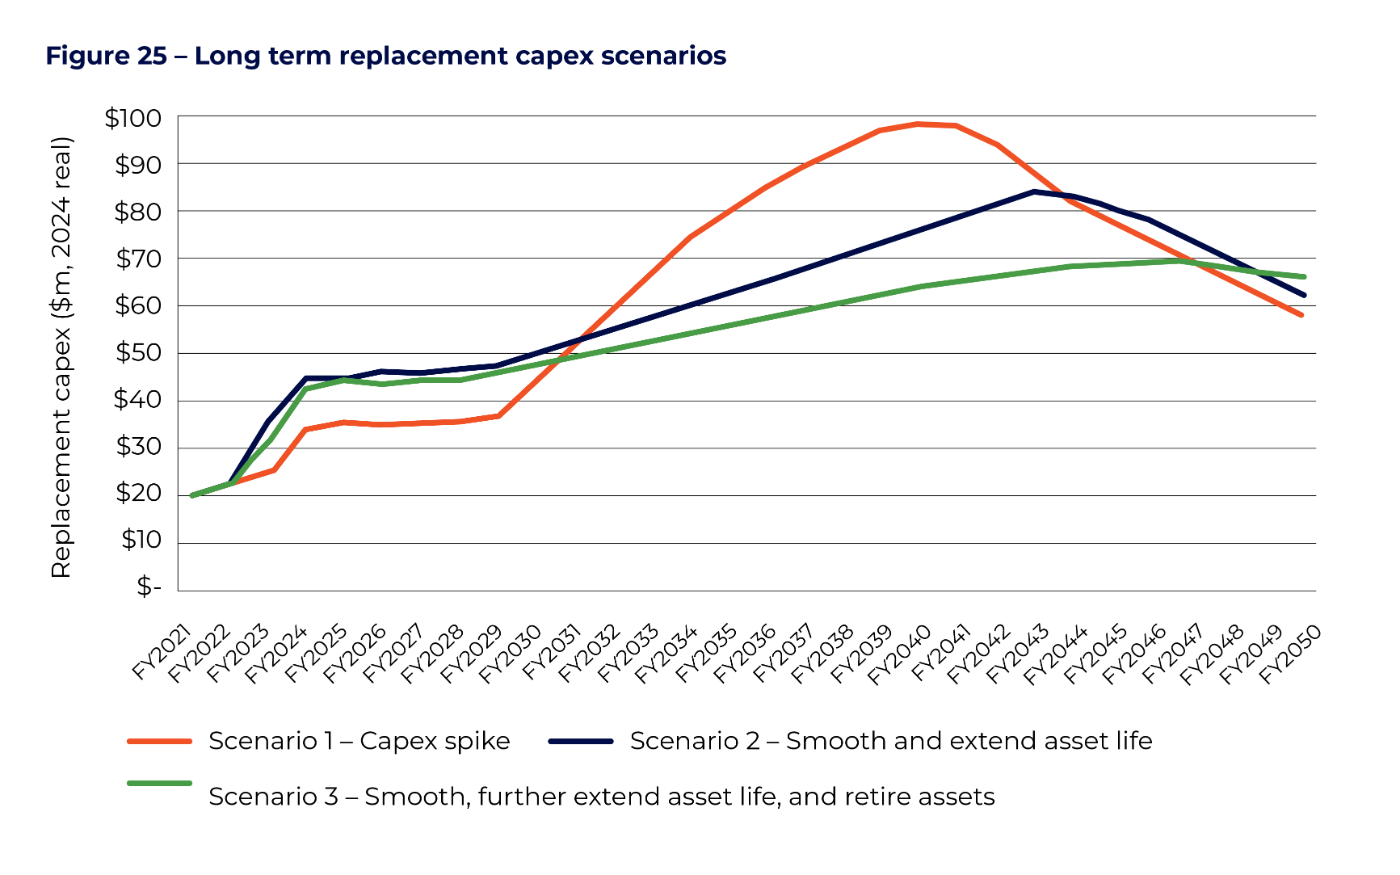 Figure 25 - Long term replacement capex scenarios